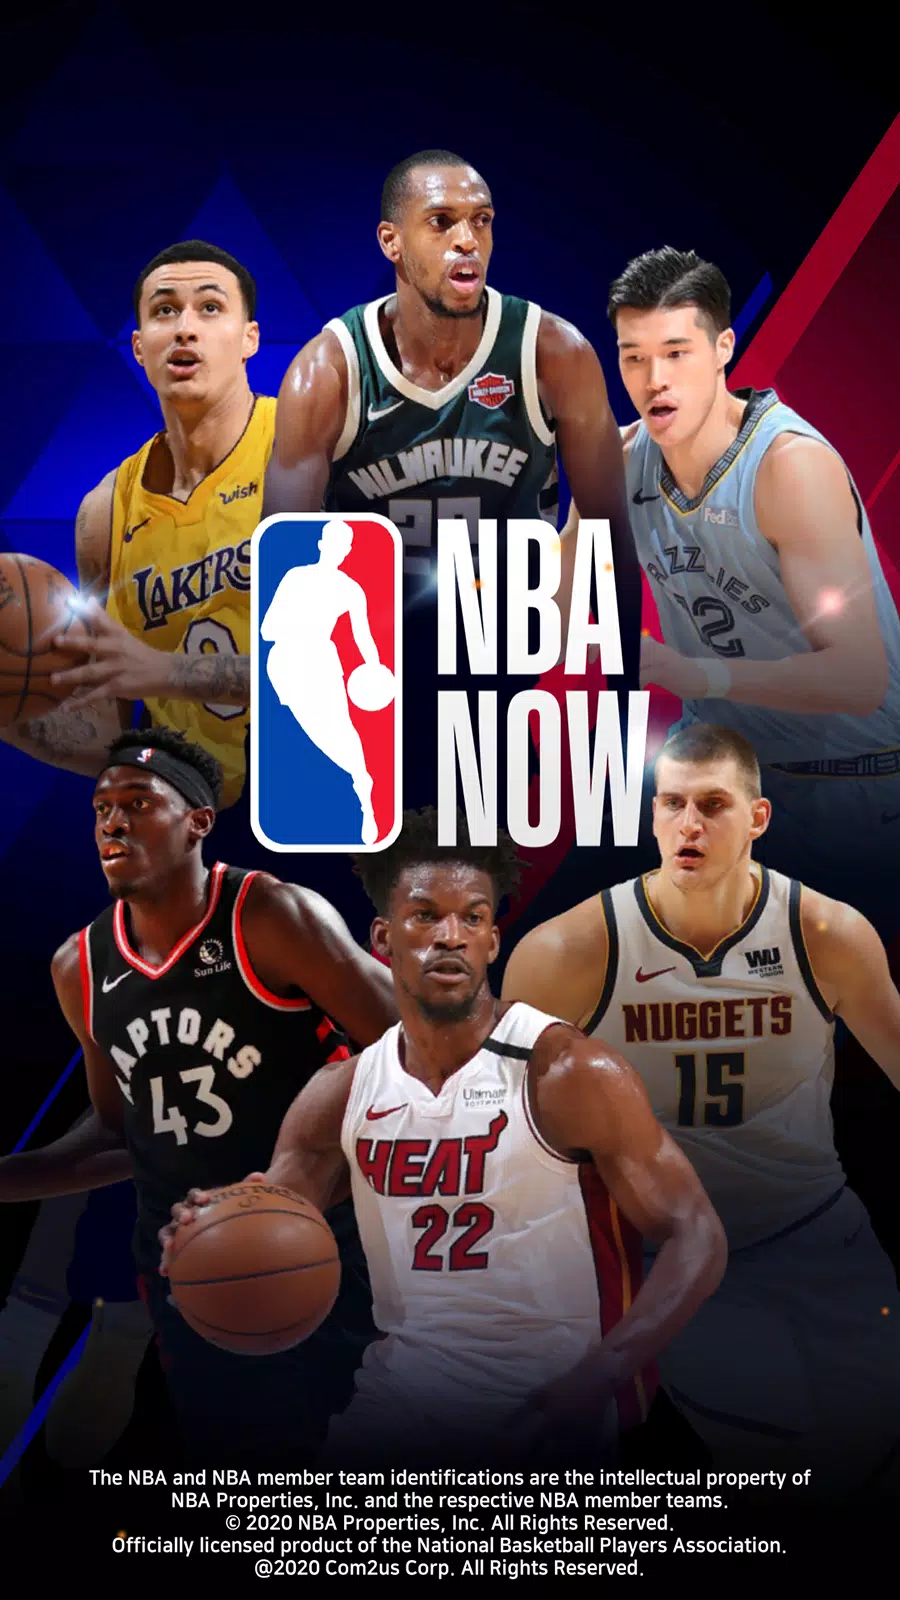 Amantes do basquete já podem baixar o jogo NBA 2K16 no Android ou iOS 